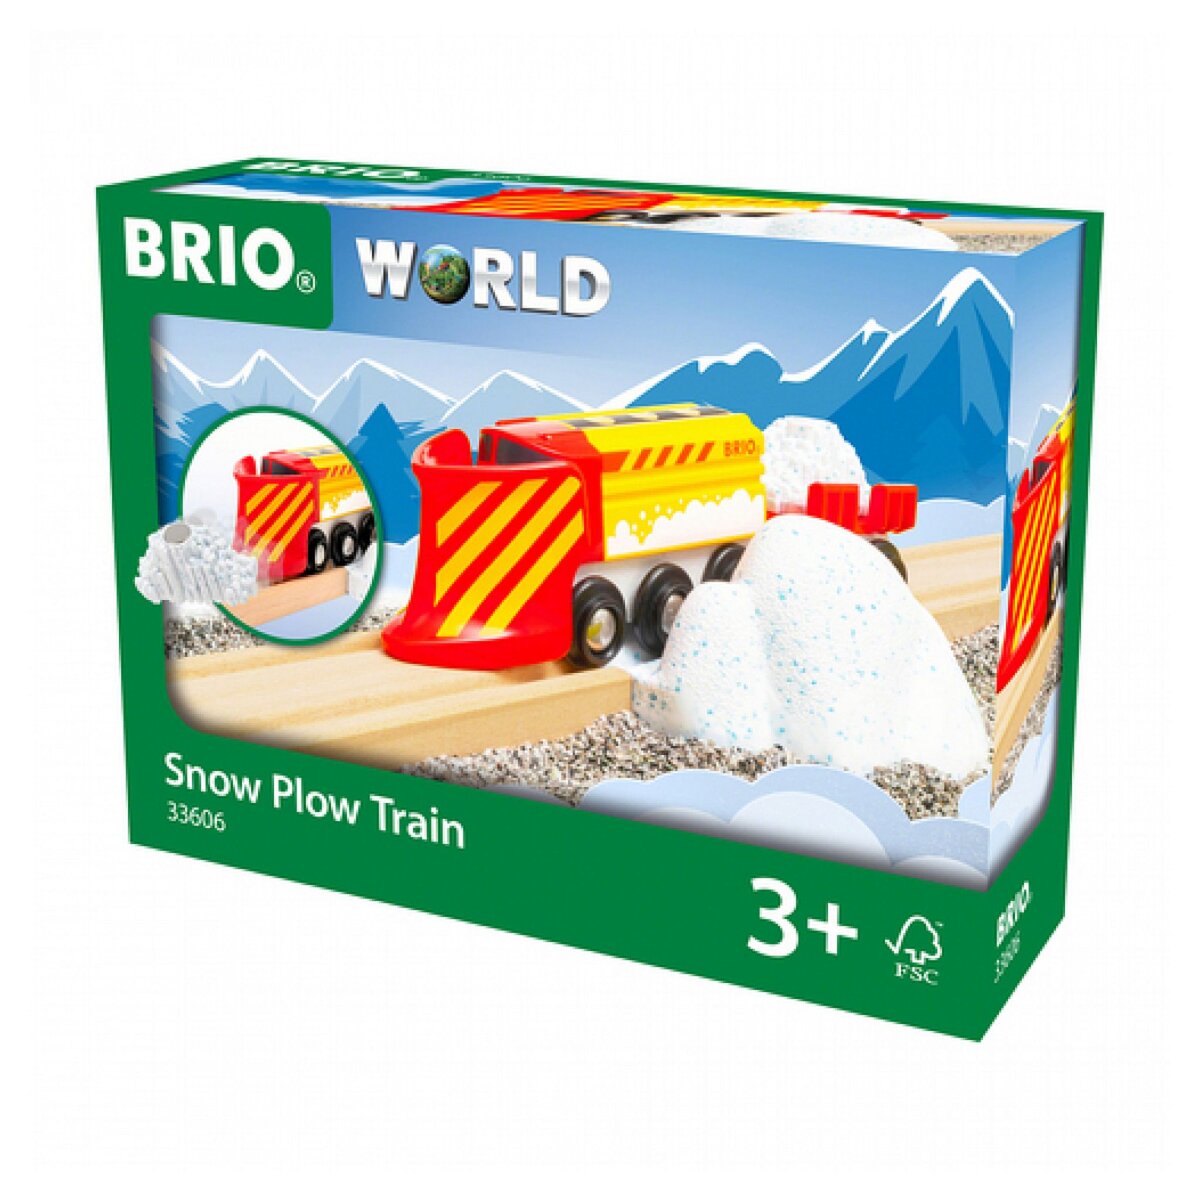 Brio 33606 le train chasse neige